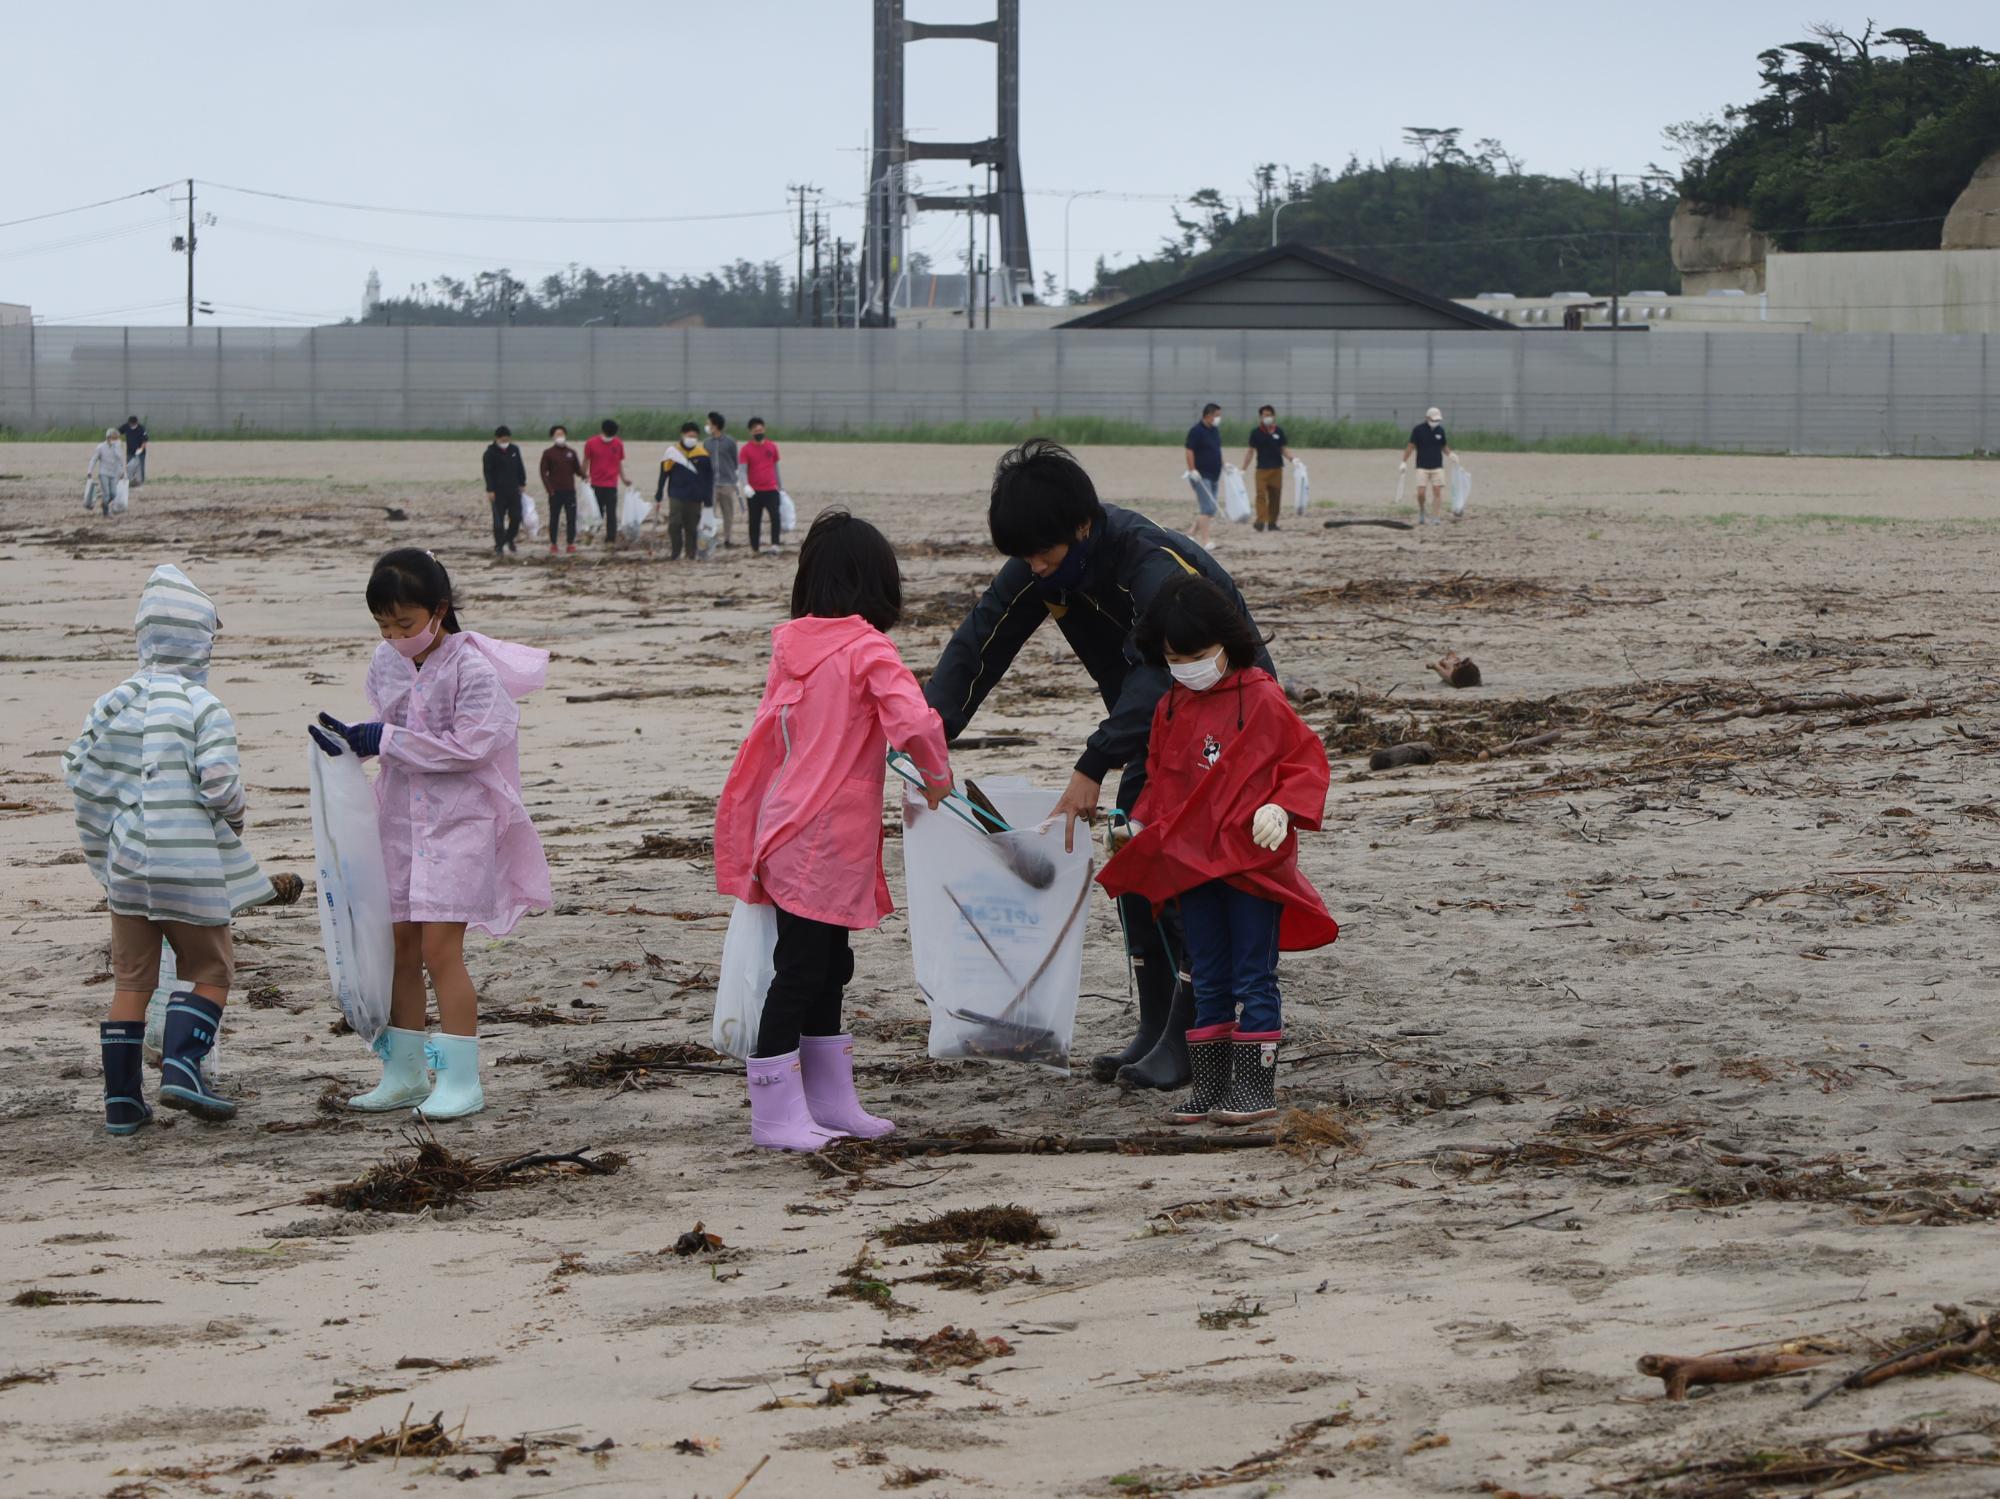 原釜尾浜海水浴場クリーンアップ作戦で、参加者らがきれいな砂浜にするため清掃する様子